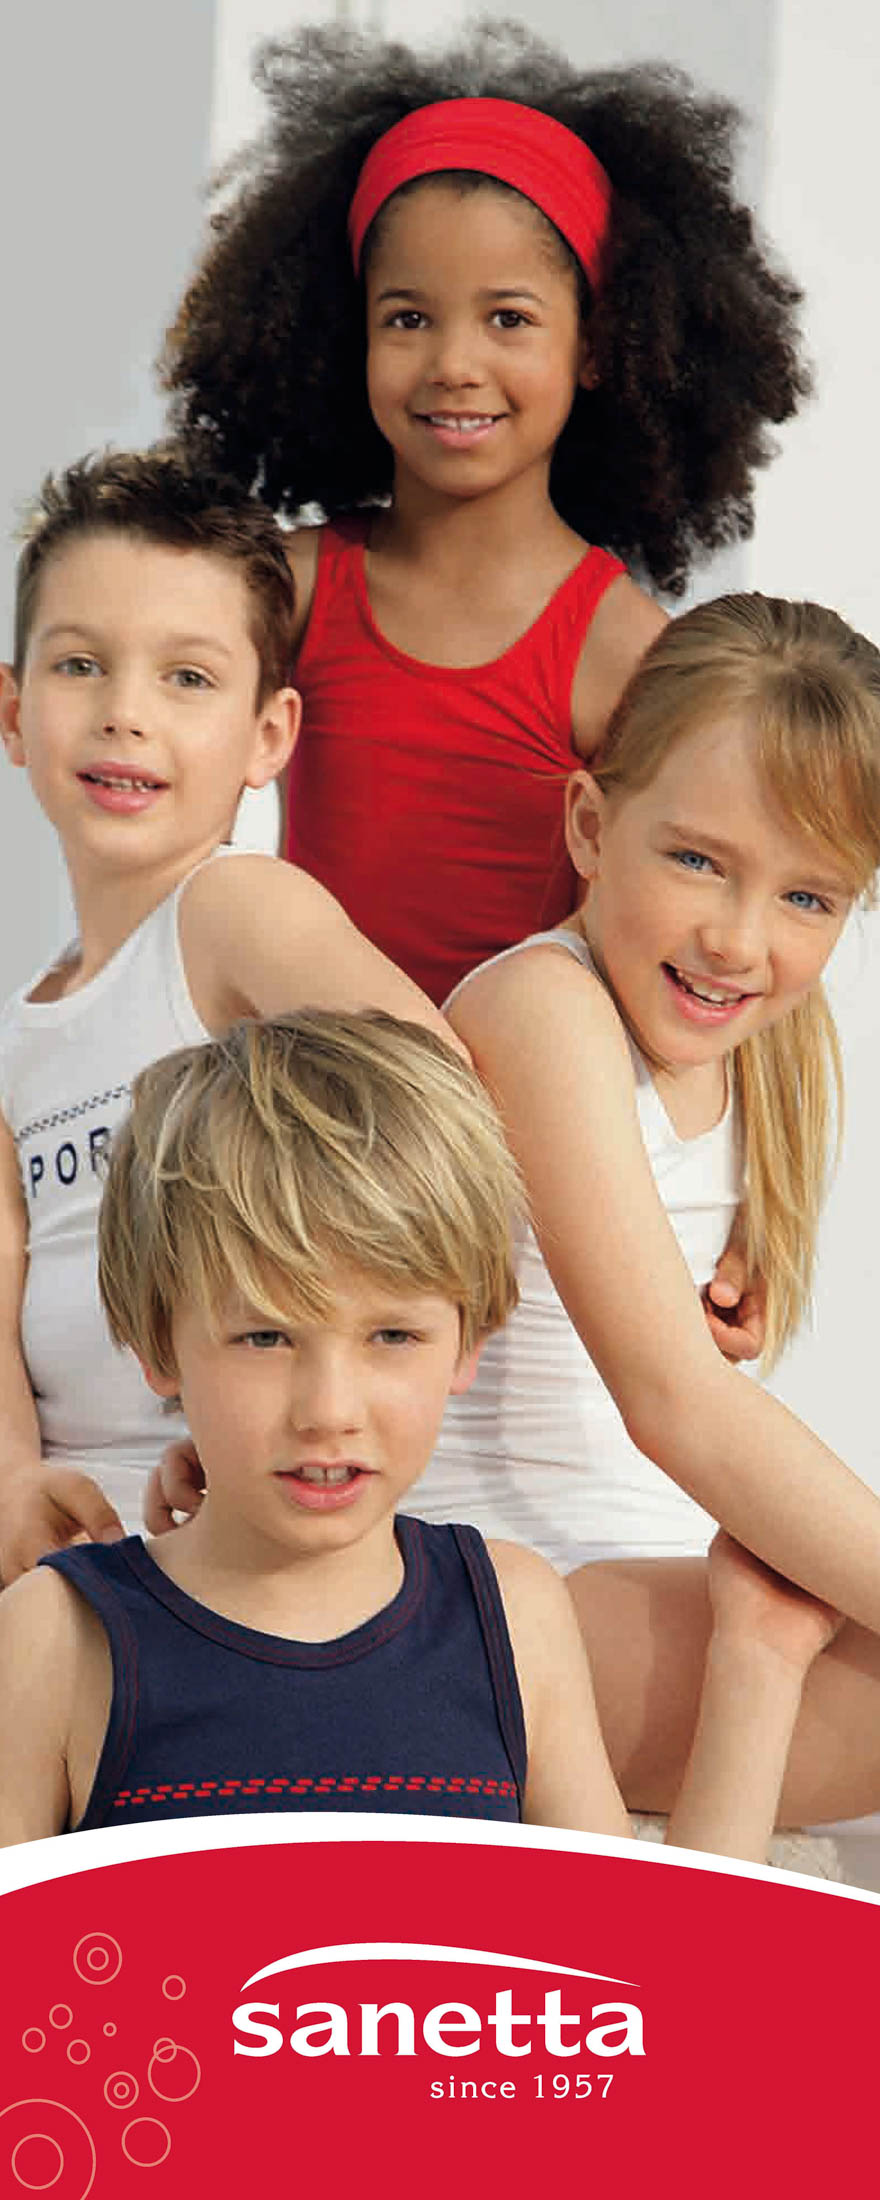 Fünf Kinder in lässiger Sportkleidung lächeln und posieren zusammen, darunter ein rotes Markenlogo. © Fotografie Tomas Rodriguez